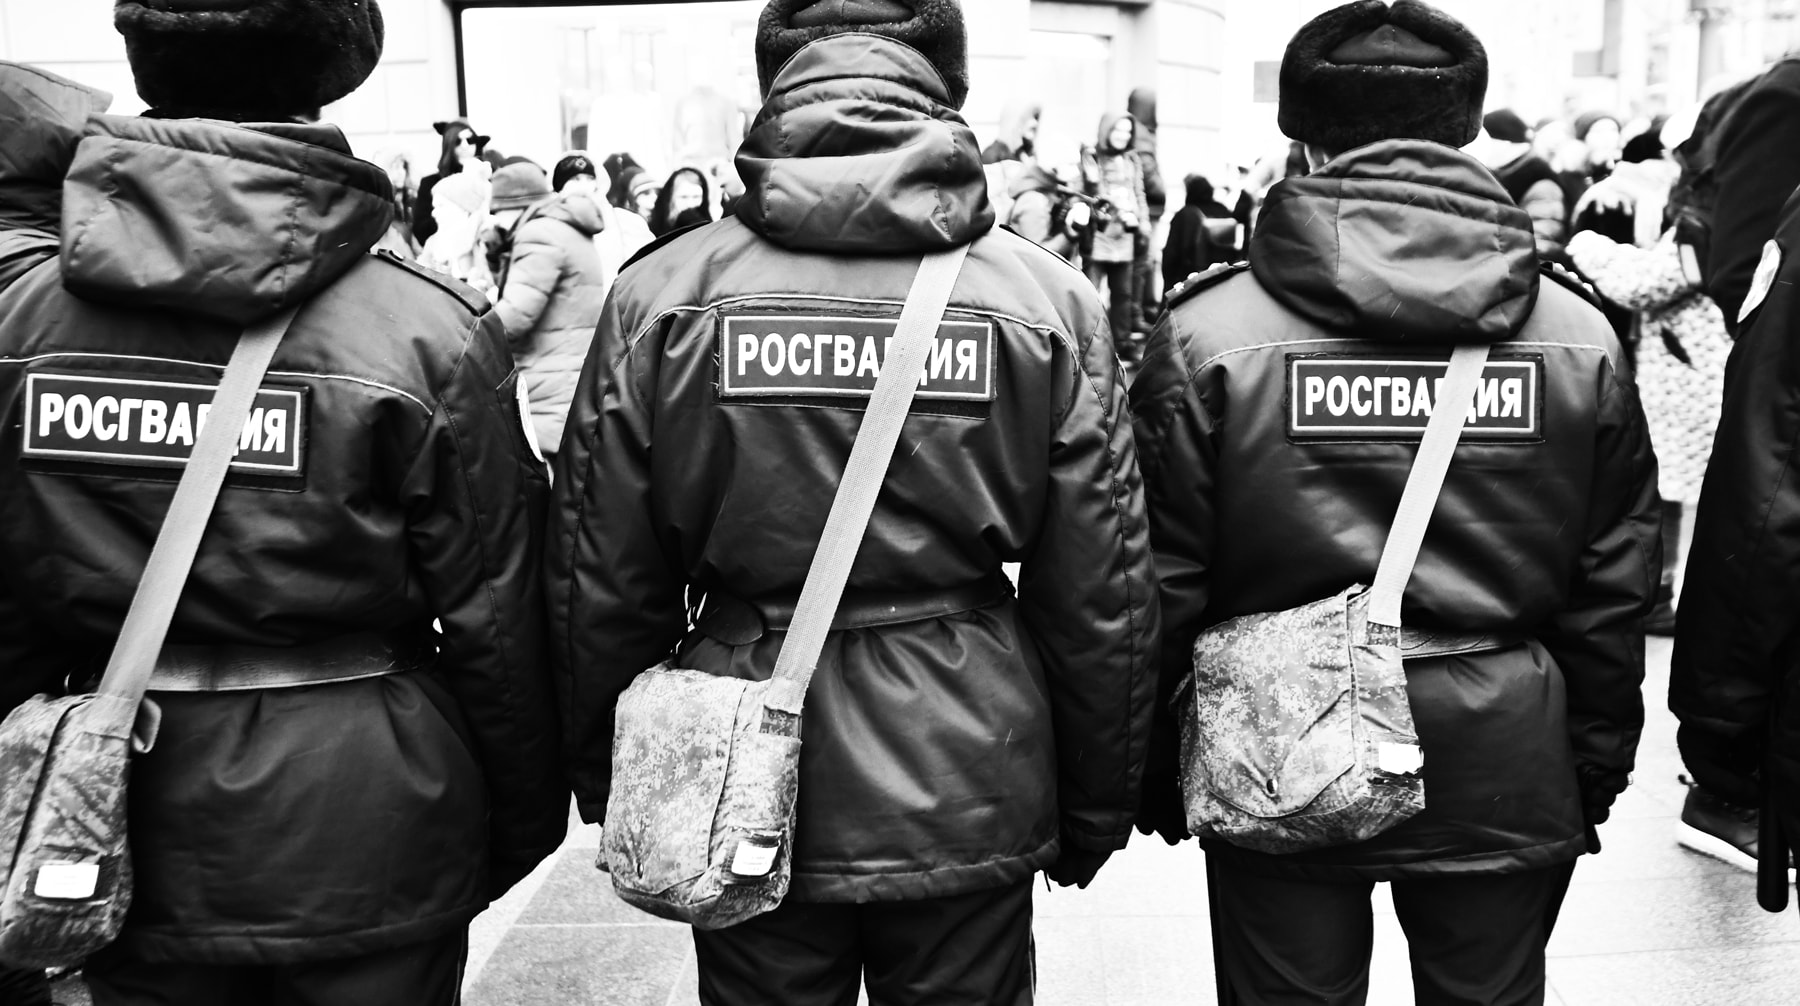 Бойцам нацгвардии России также прикажут заботиться о своем здоровье и избавляться от вредных привычек Фото: © GLOBAL LOOK press/Komsomolskaya Pravda